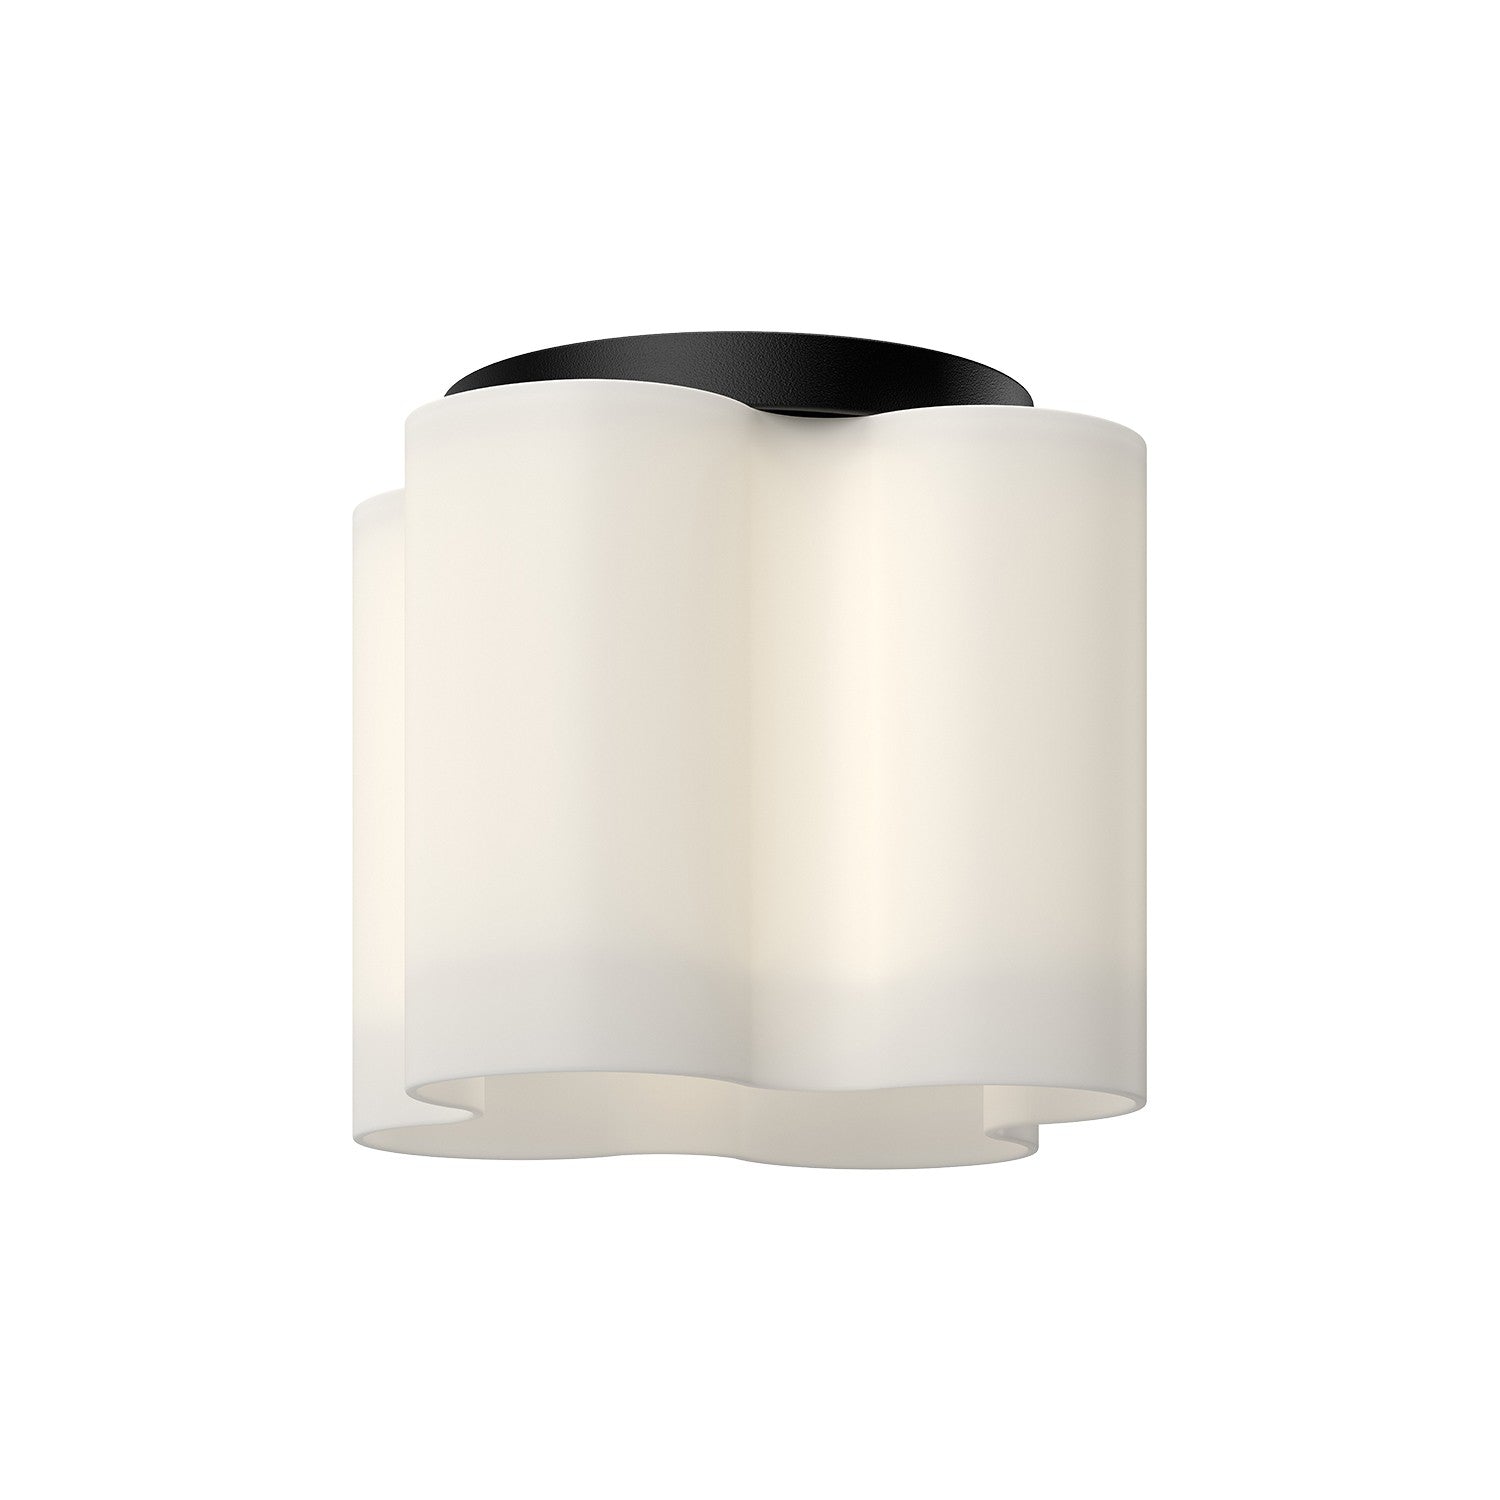 Kuzco Lighting - FM54809-BK/OP - LED Flush Mount - Clover - Black/Opal Glass